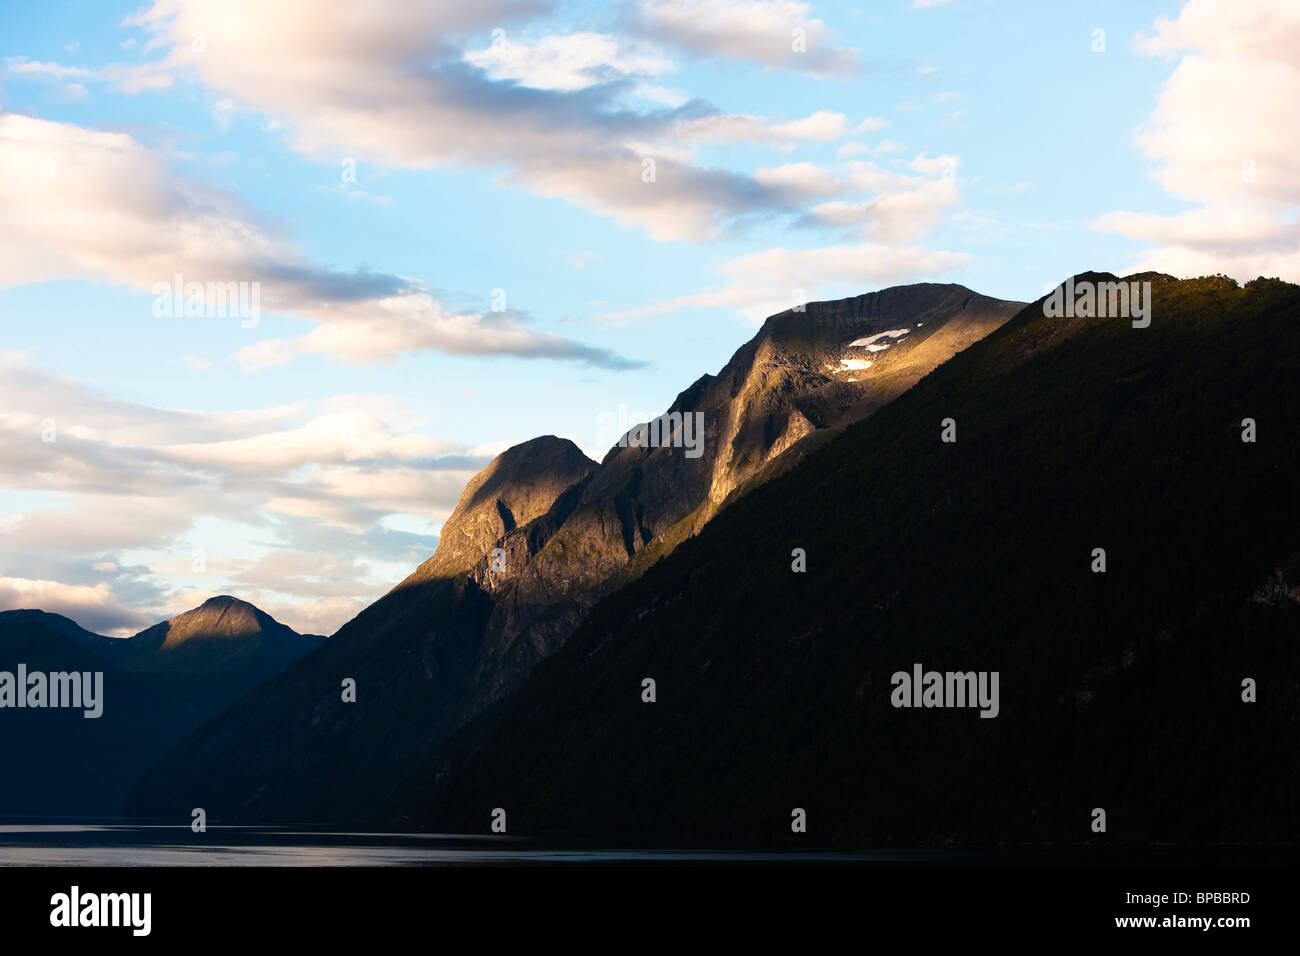 Norwegen-Stranda Sunnylvsfjord Fjord ruhige ruhige friedliche Granit Vorahnung Textfreiraum Stockfoto